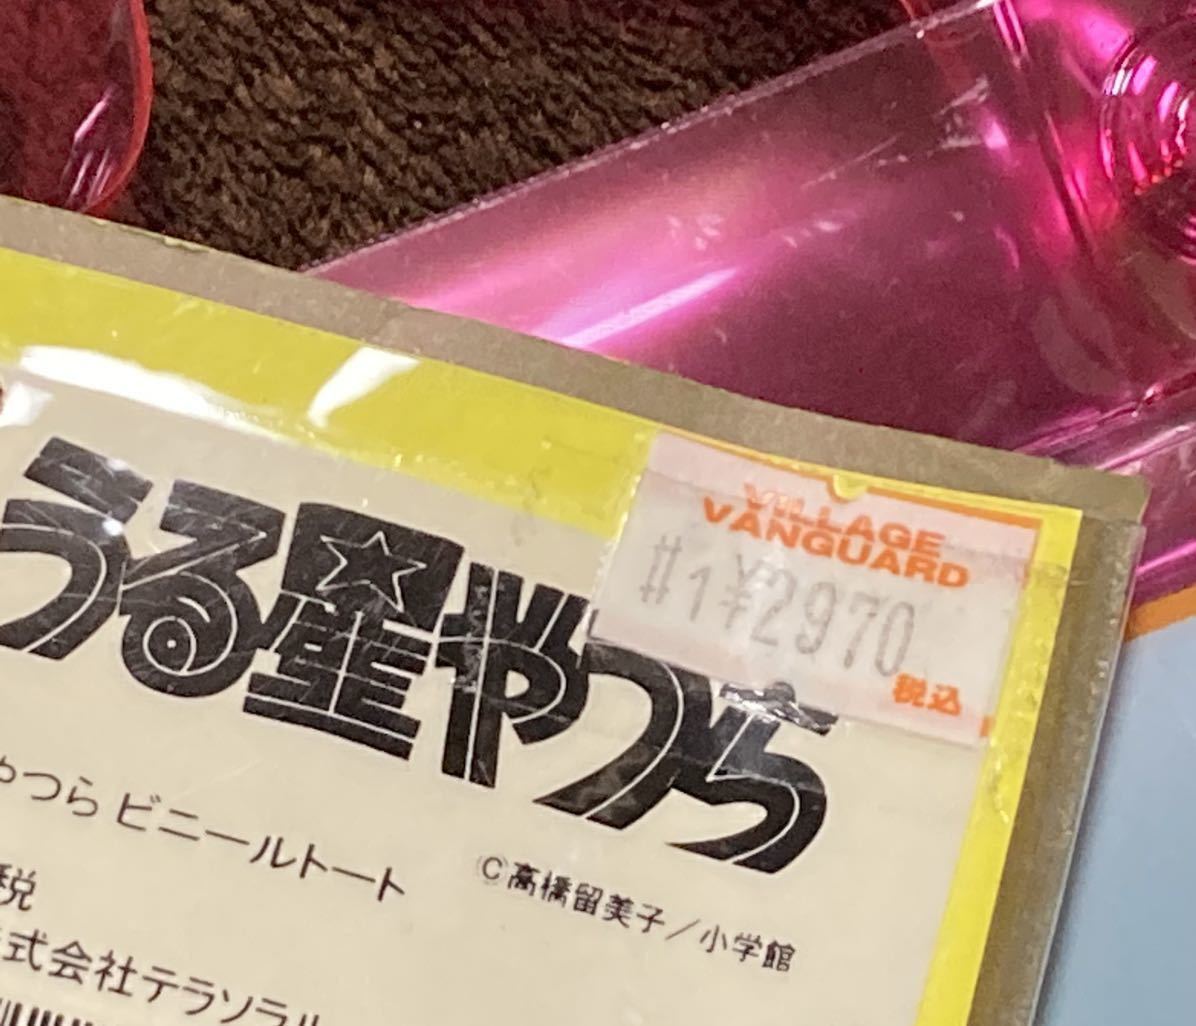 [ обычная цена 2970 иен ] новый товар Urusei Yatsura винил большая сумка большая сумка сумка розовый высота .. прекрасный .la пятно m Chan оригинальное произведение манга комикс a